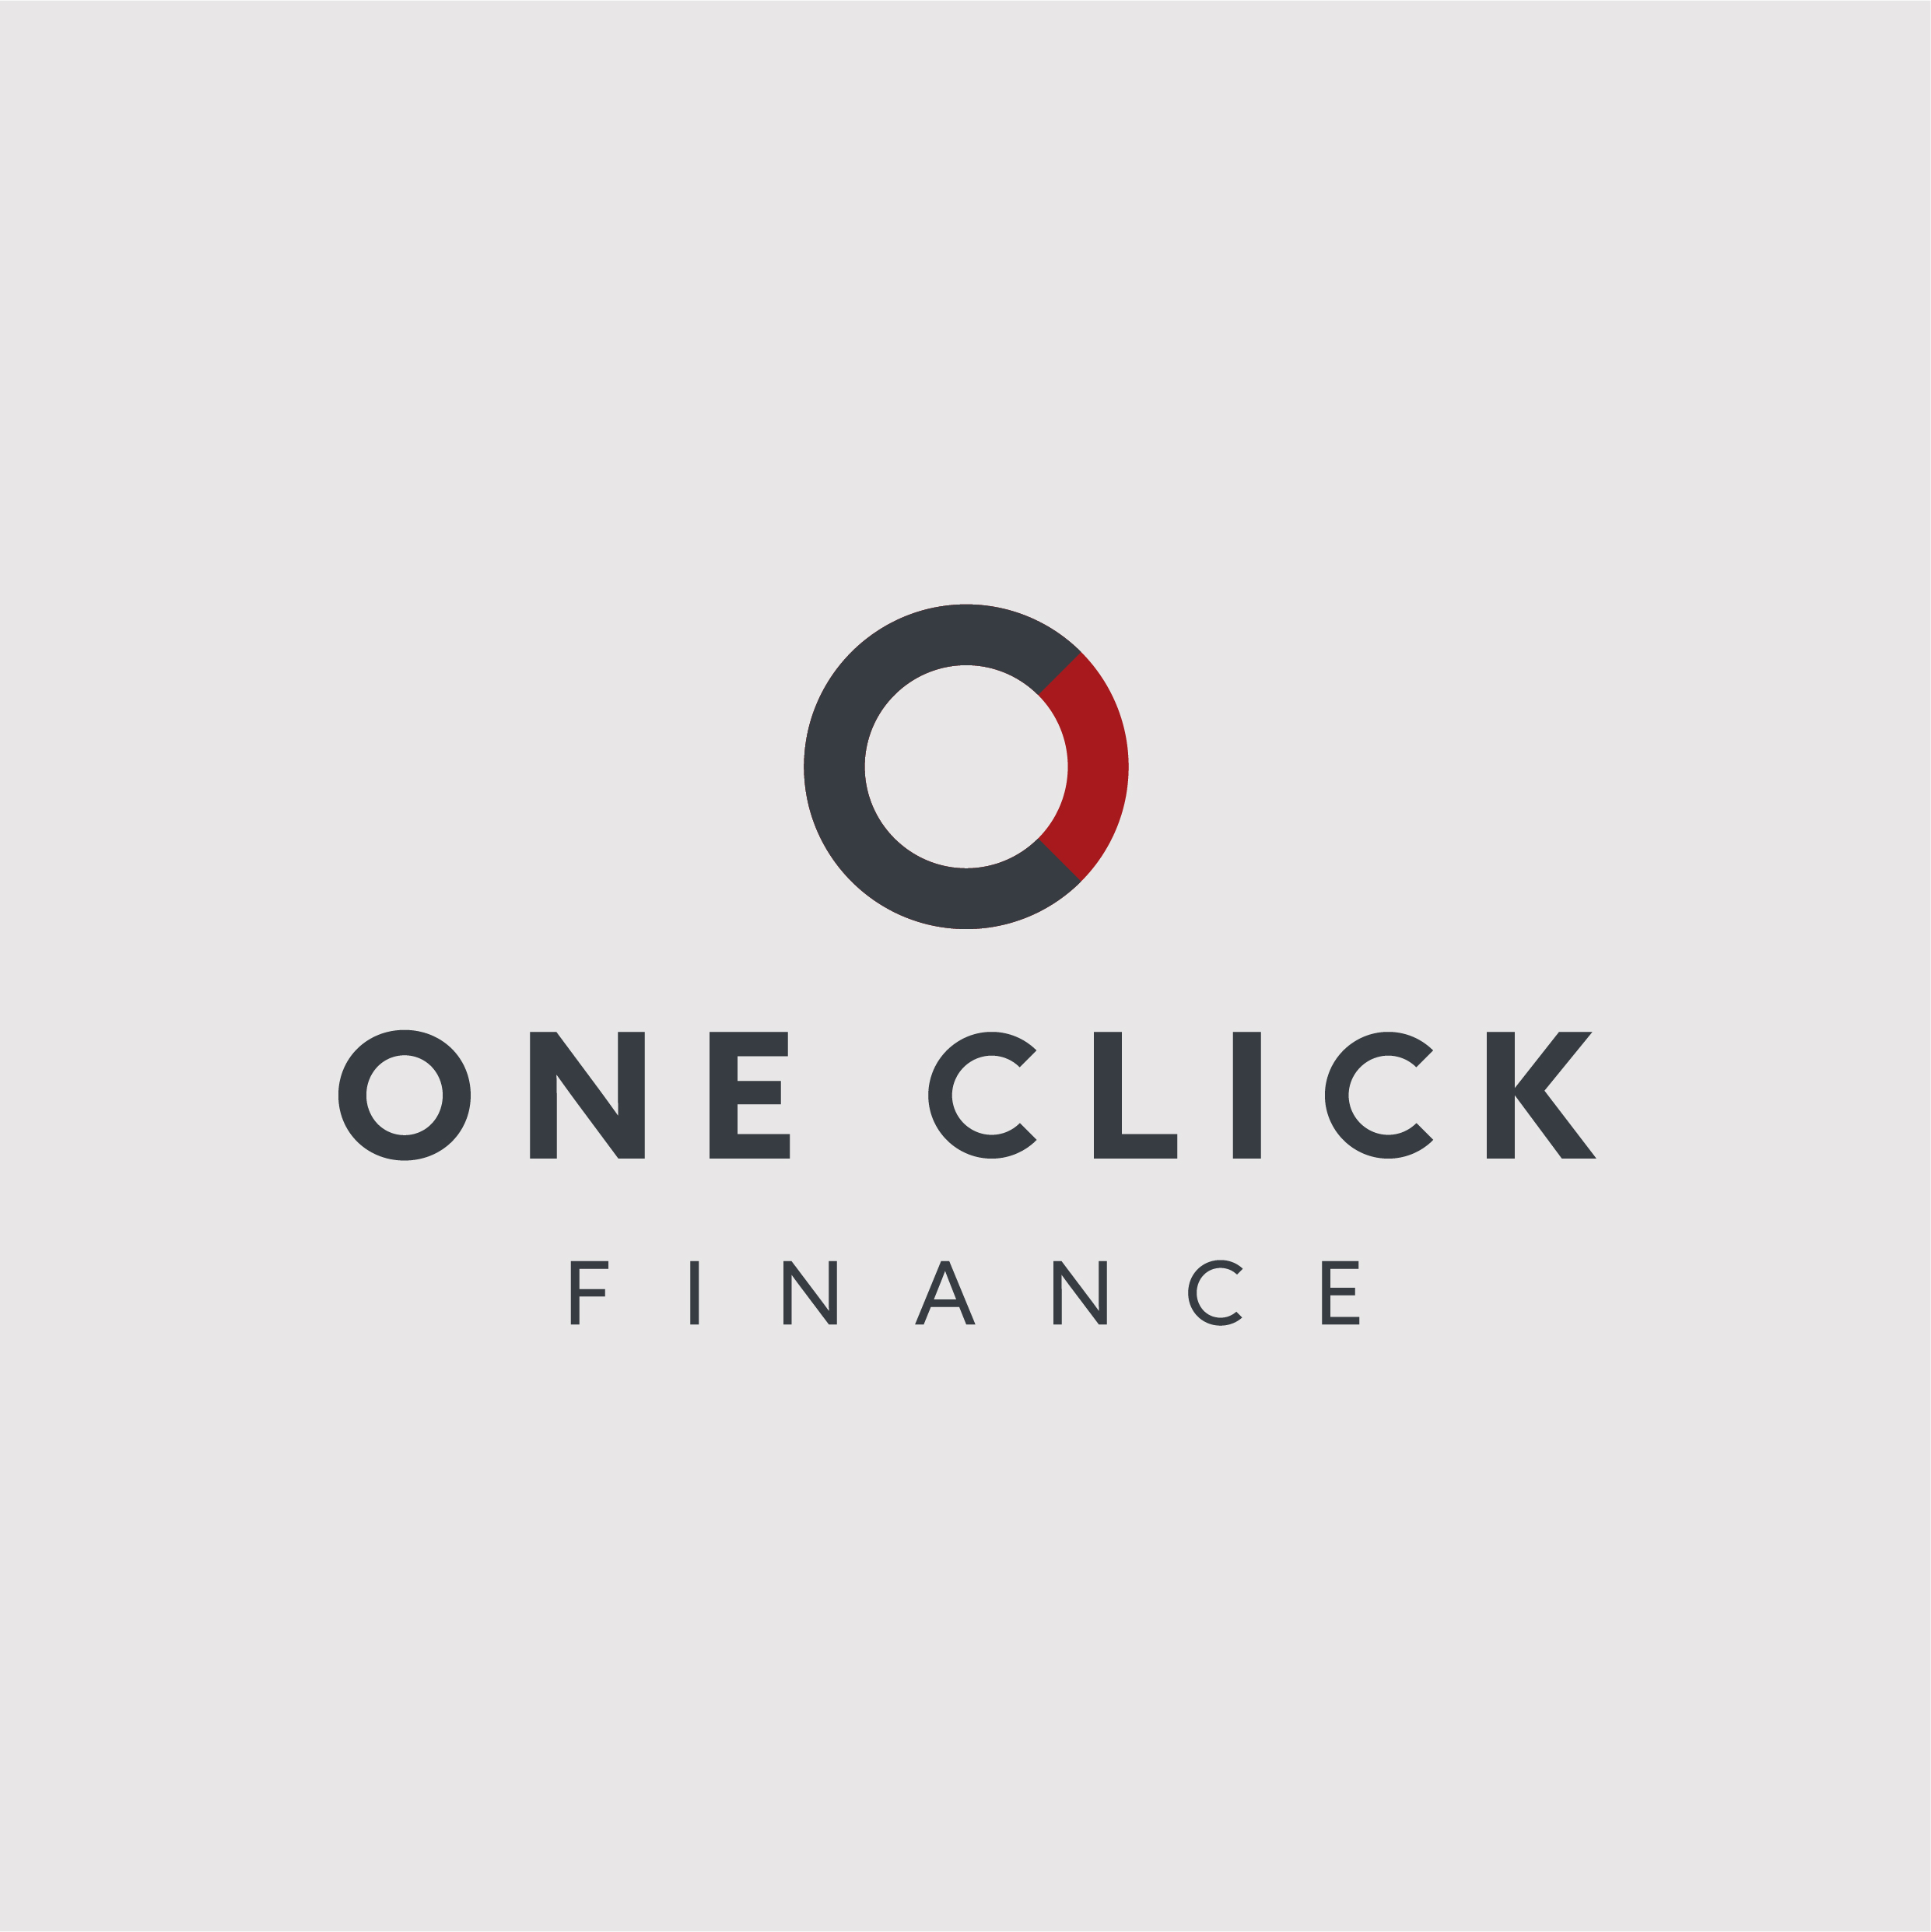 One Click Finance Company Logo